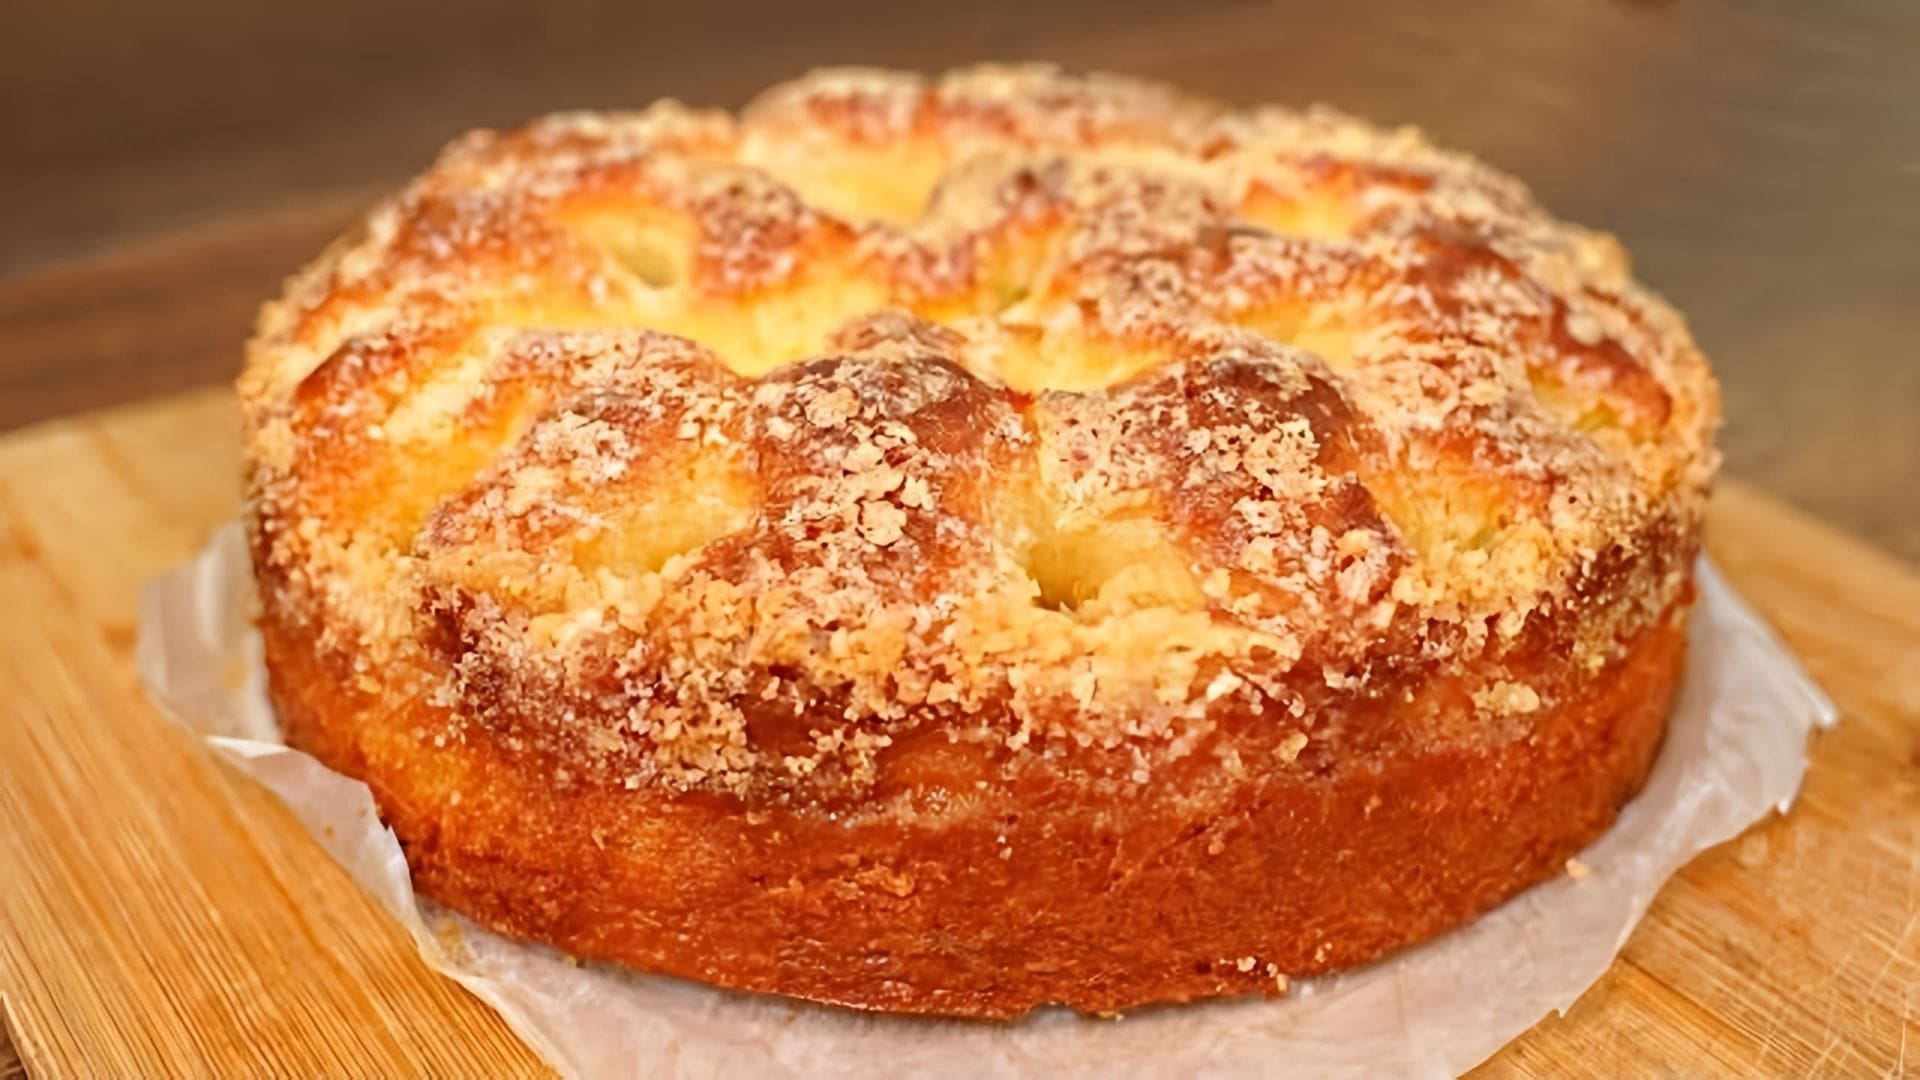 Видео рецепт мягкого сахарного пирога, который описывается как более простой в приготовлении, чем торт